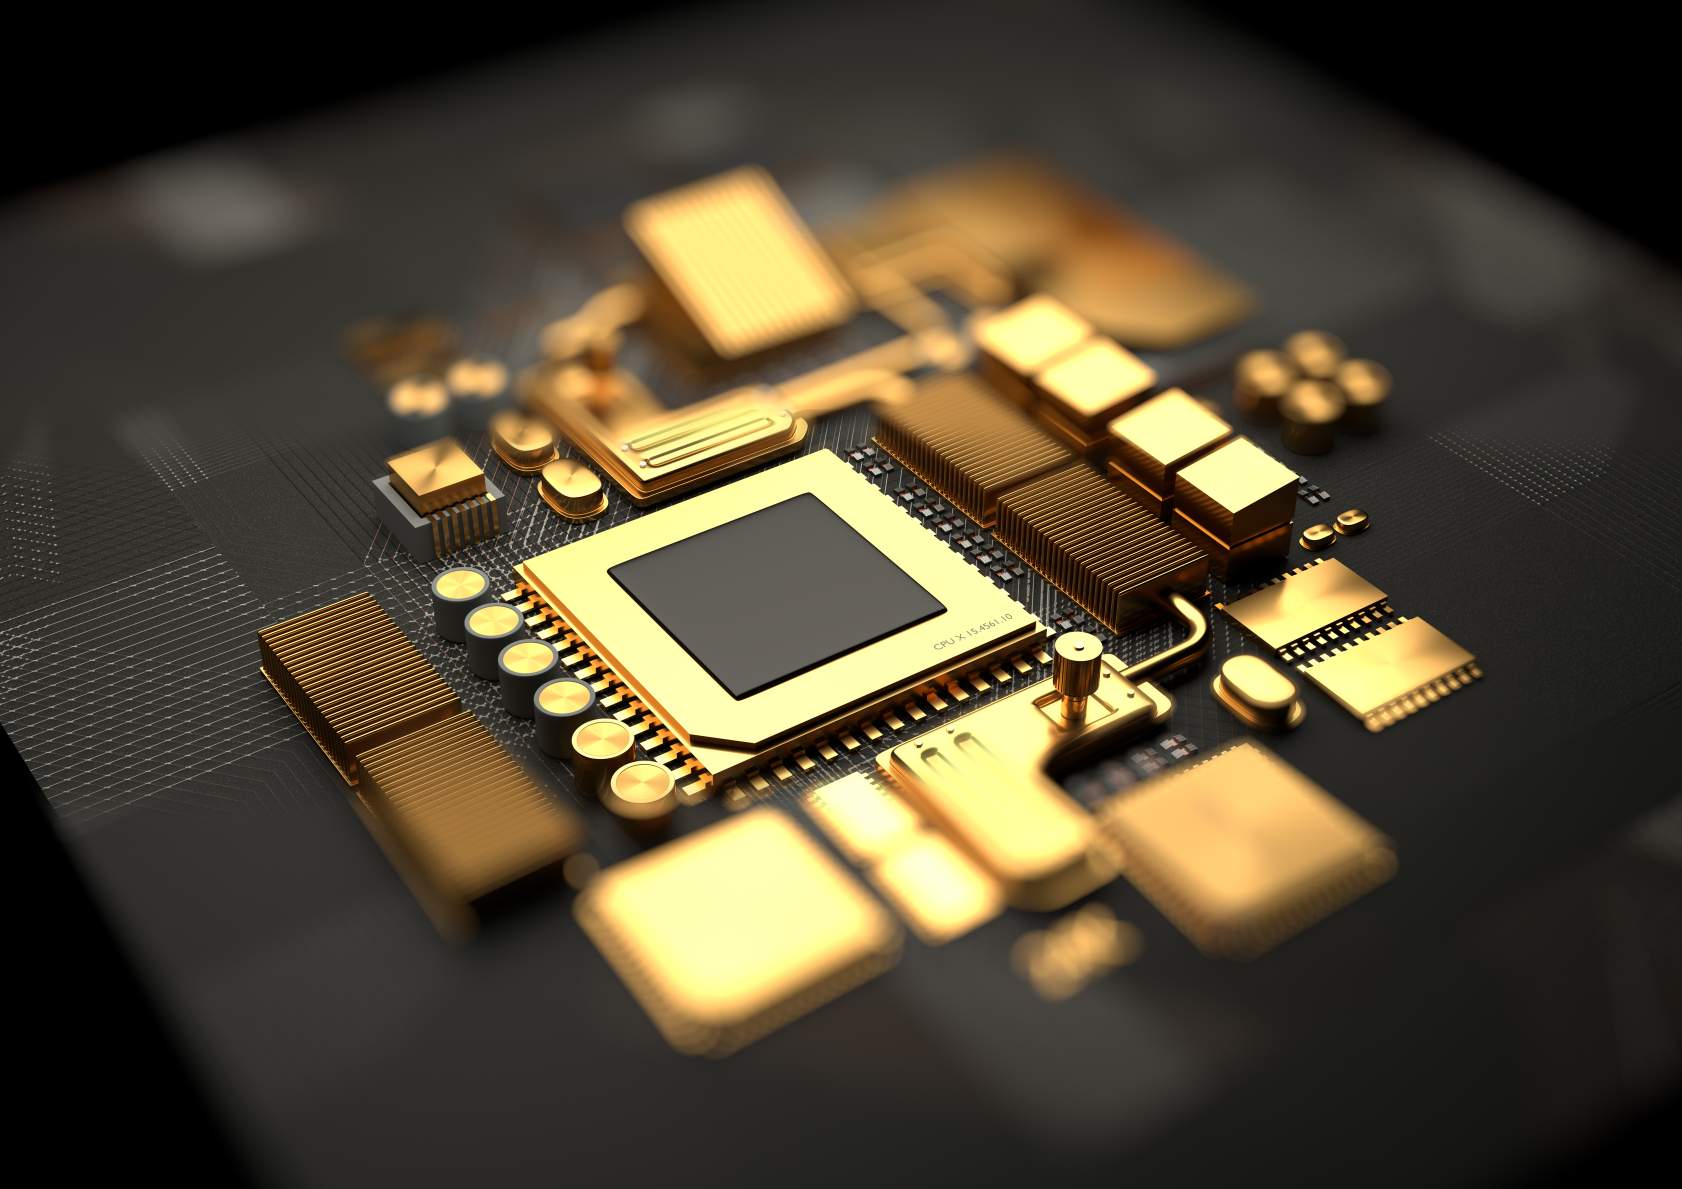 O imagine conceptuală a componentelor procesorului și chipset-ului plăcii de bază realizate din aur. © Credit imagine: Solarseven | Licențiat de la DreamsTime.com (fotografia de stoc pentru utilizare editorială/comercială)